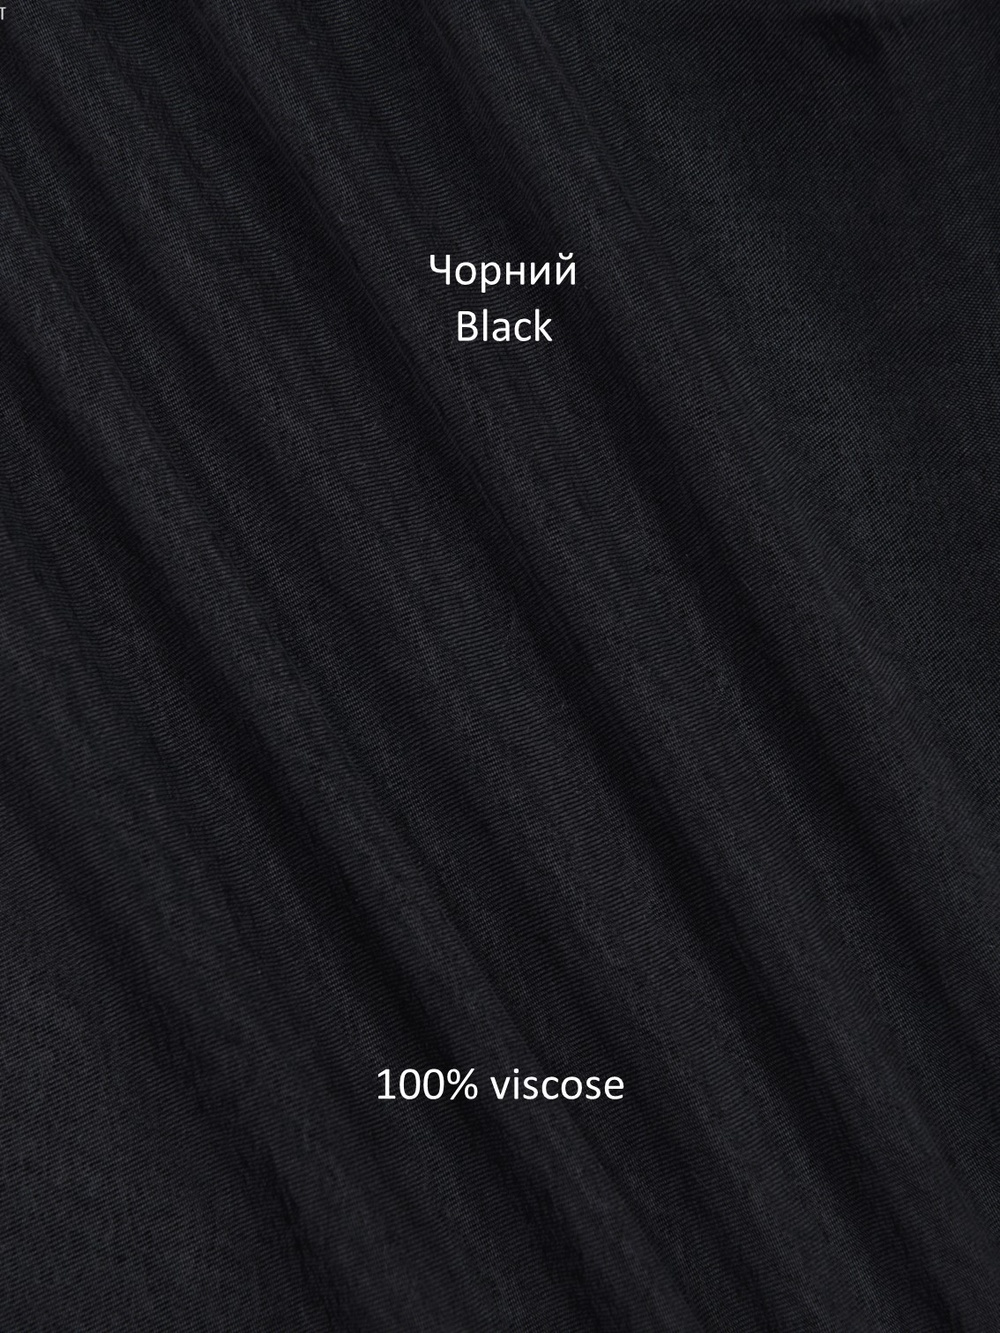 Костюм брючный из эвкалипта чёрный+ 075_076_black фото